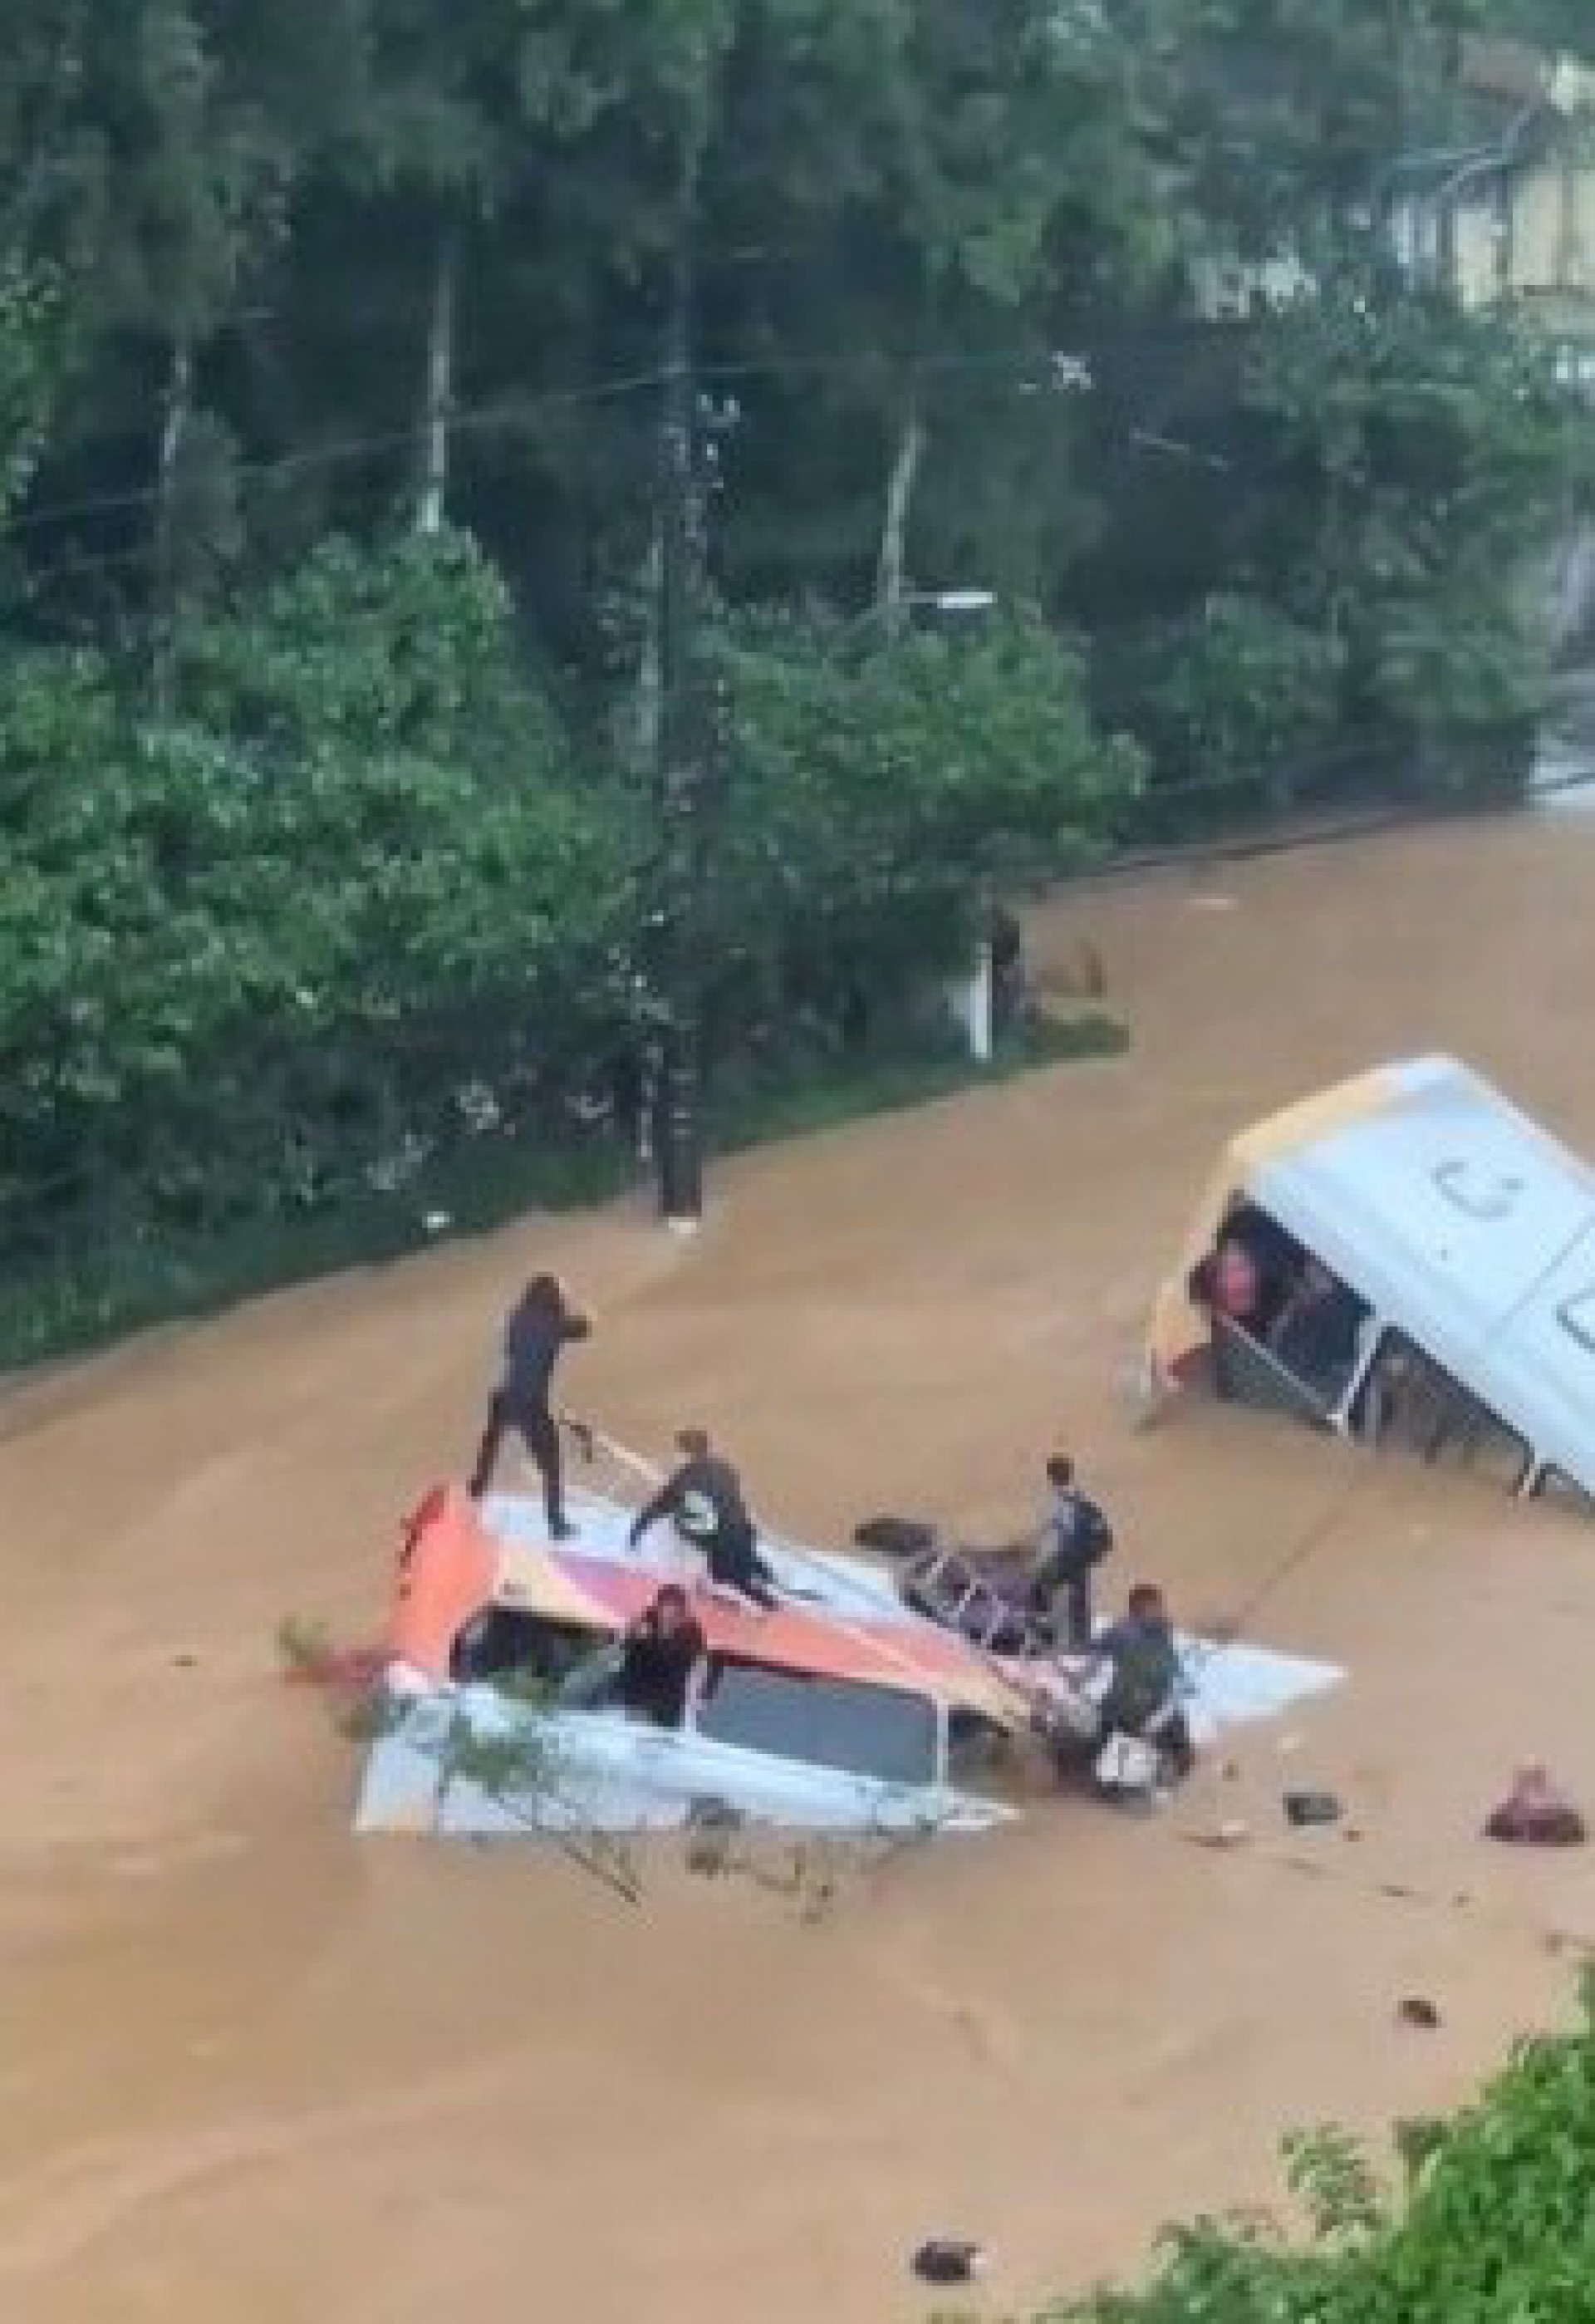 Passageiros de ônibus tentam se salvar, enquanto enchente arrasta os veículos - Reprodução de vídeo